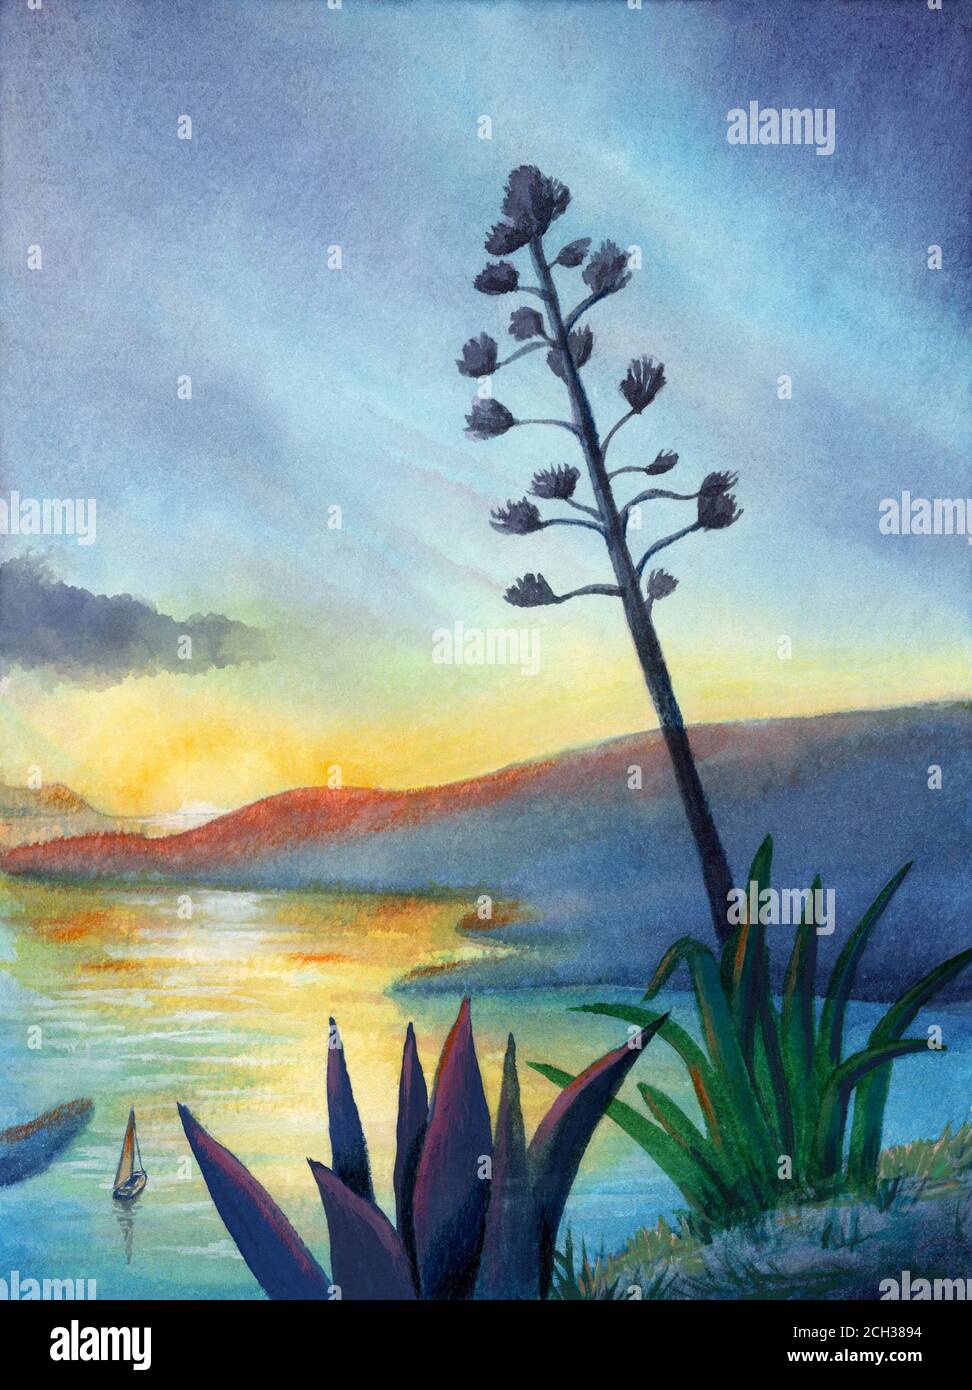 Peinture aquarelle d'un paysage marin au coucher du soleil. Illustration traditionnelle sur papier. Banque D'Images